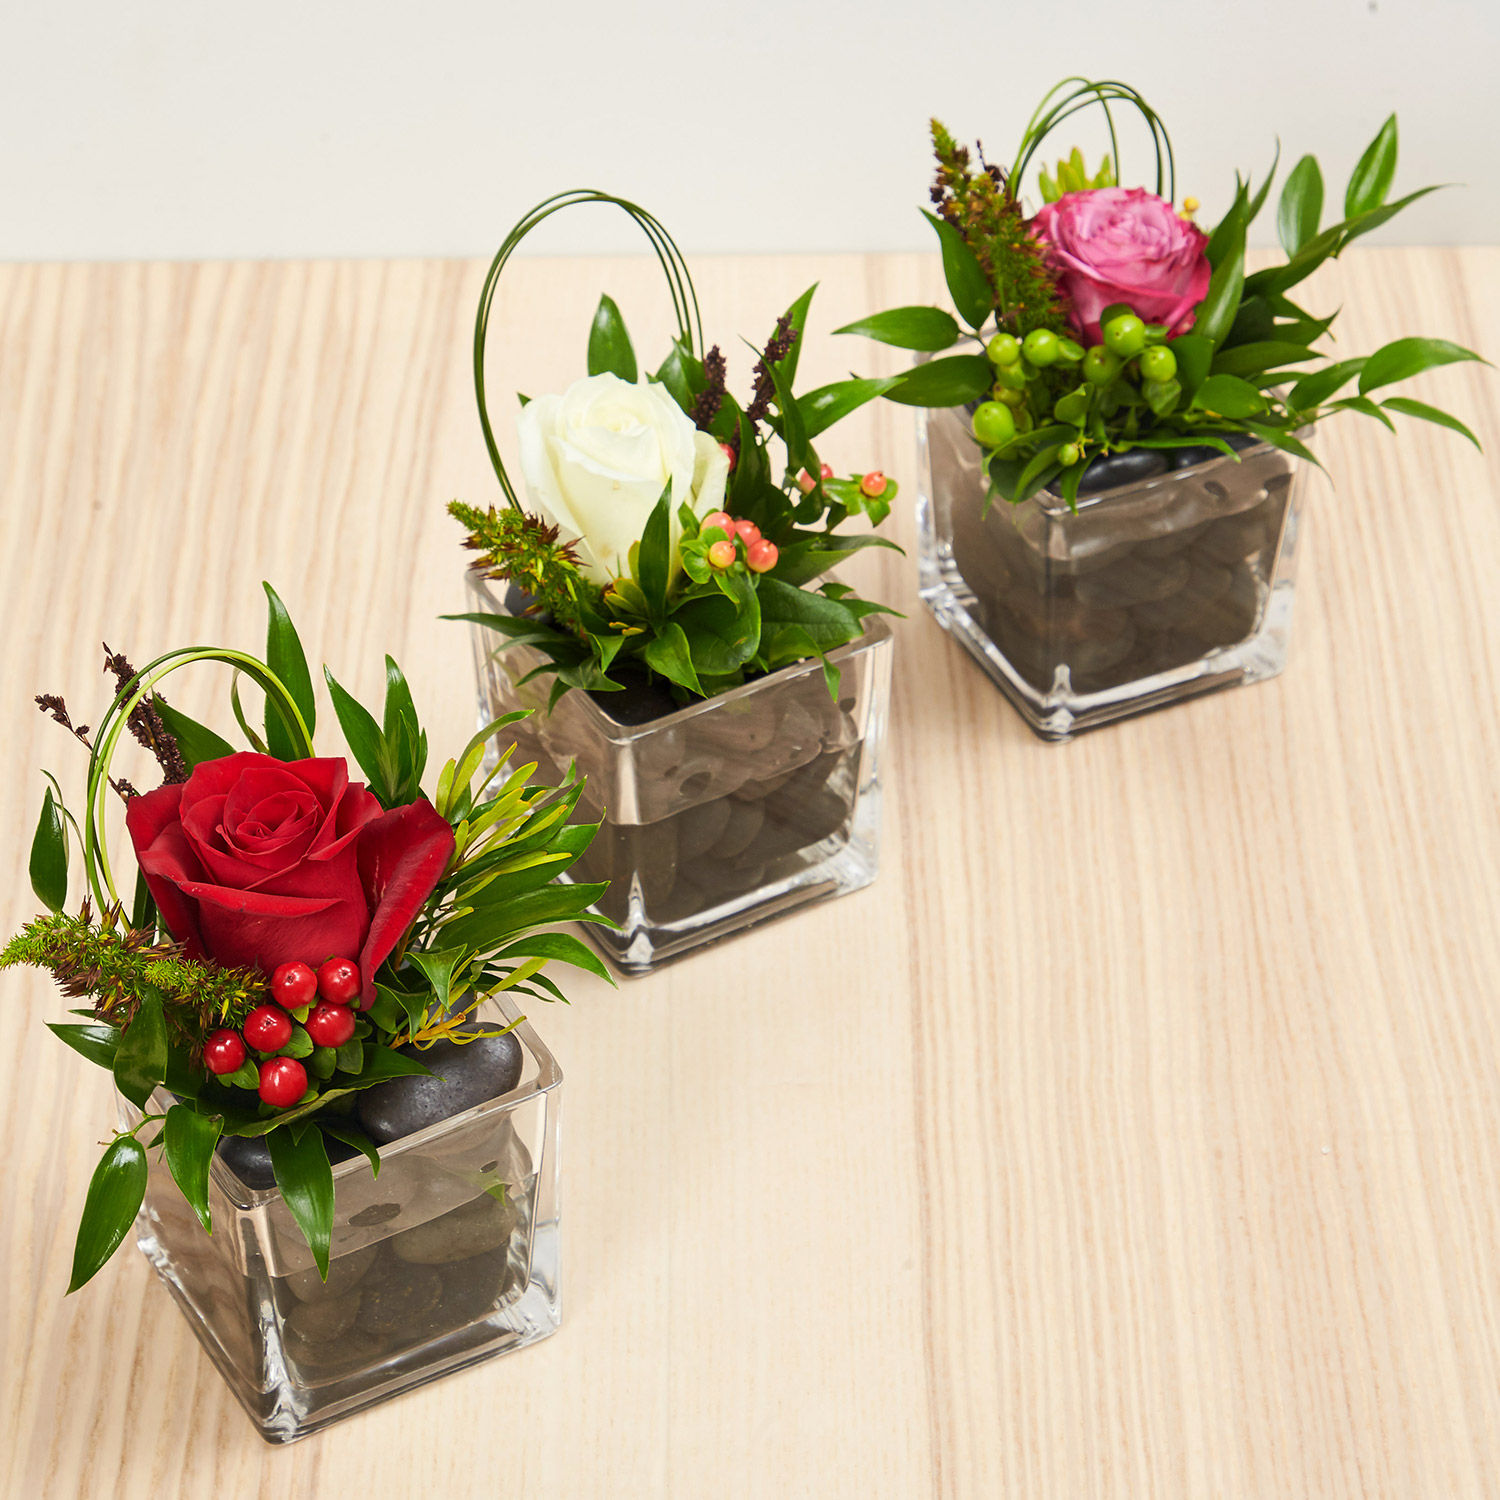 Online Set Of 3 Flower Vase Arrangements Gift Delivery in Singapore - FNP